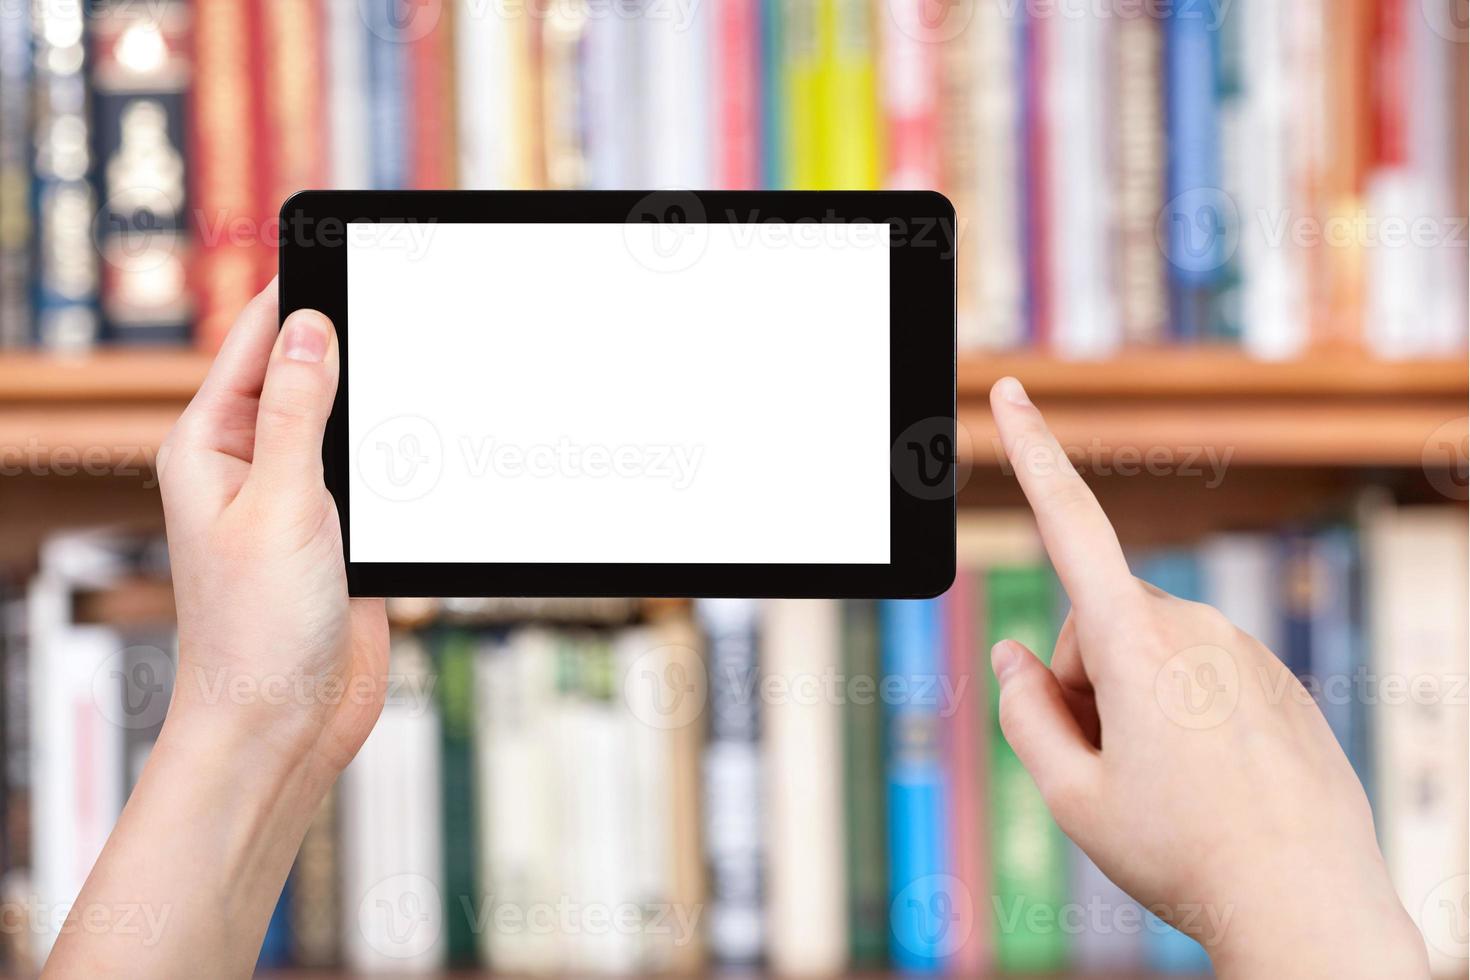 la mano sostiene la tableta y los estantes para libros foto